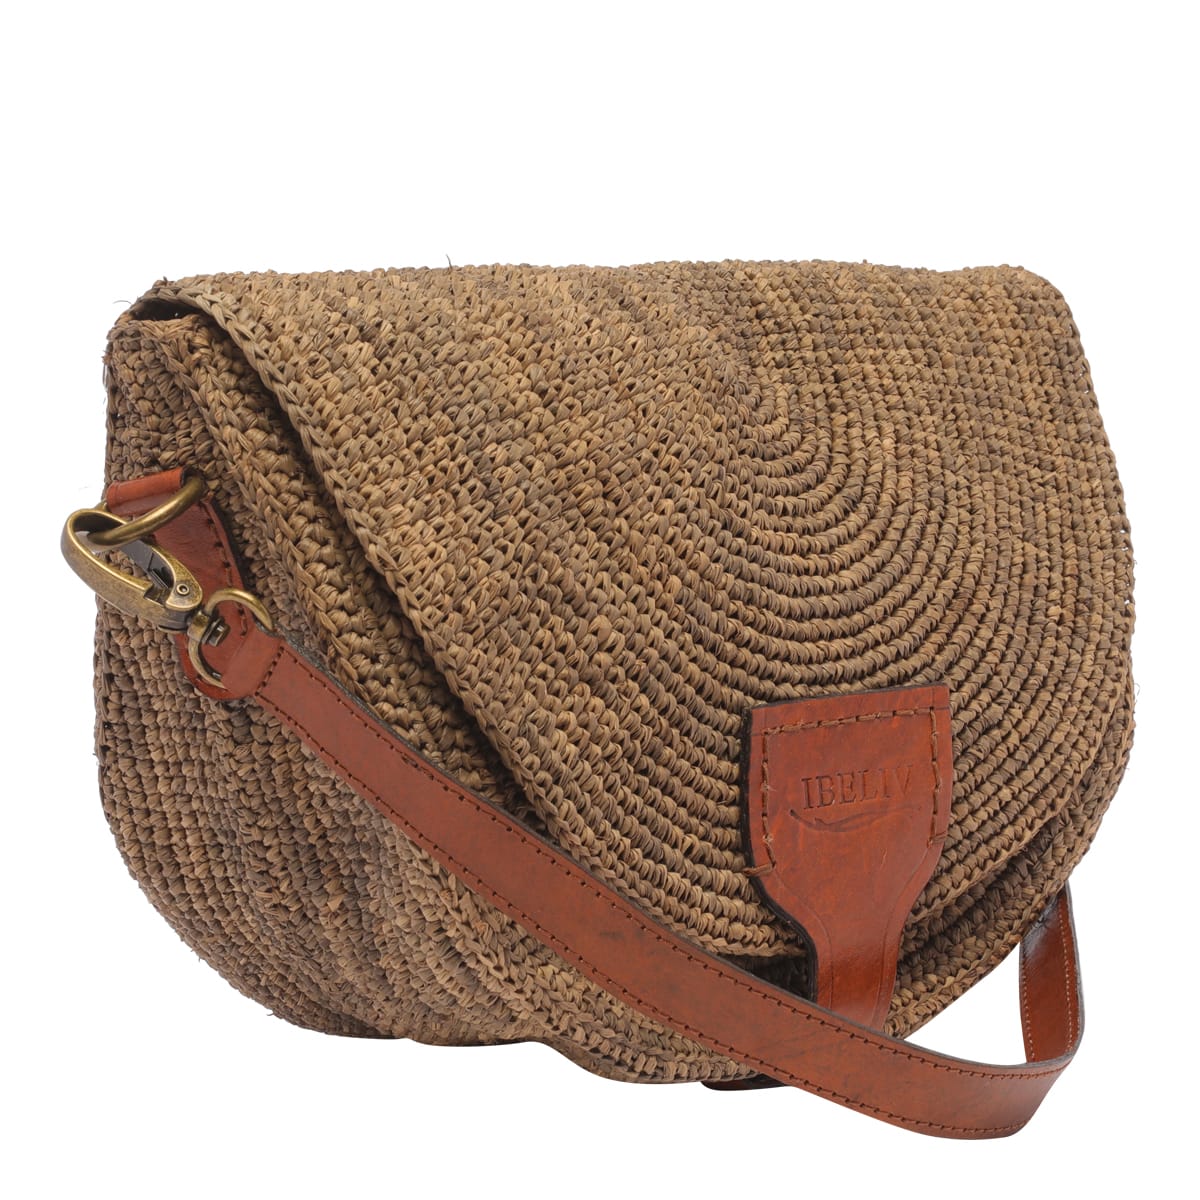 Shop Ibeliv Tiako Crossbody Bag In Brown